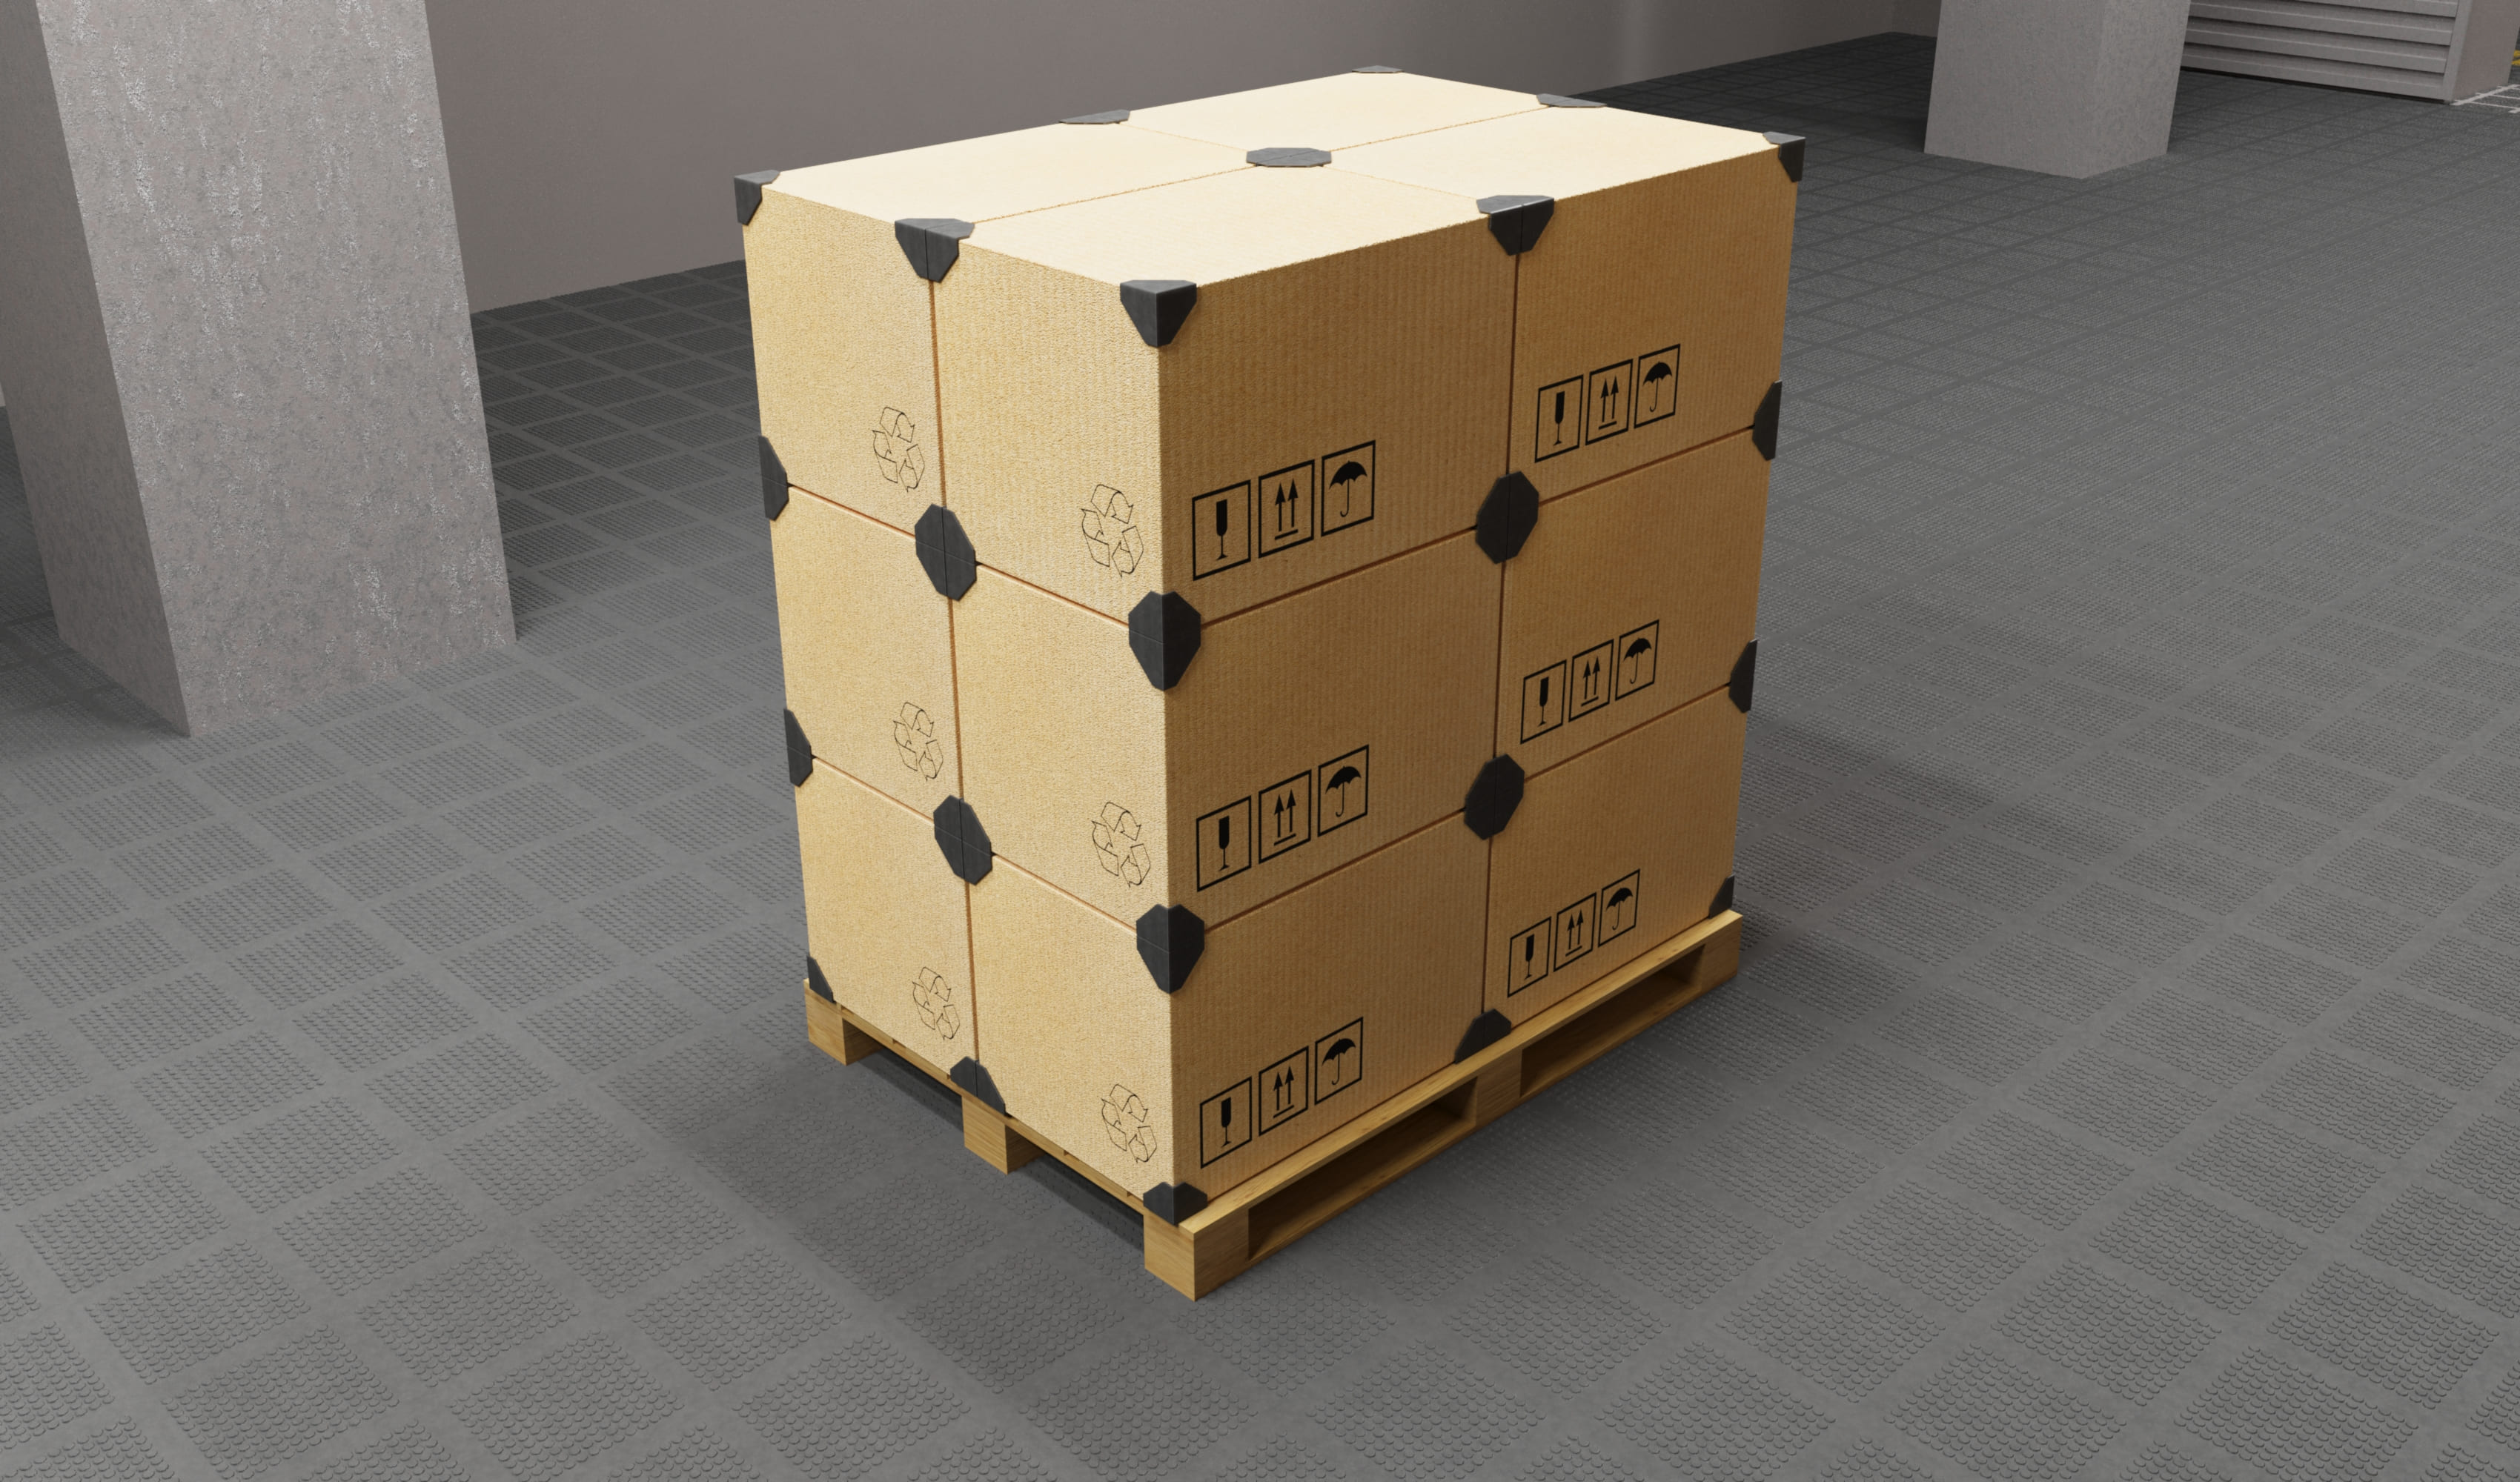 уголки для картонных коробок,защитные пластиковые уголки для коробок,защитные уголки для коробки,транспортировка картонных коробок,уголки для коробок пластиковые